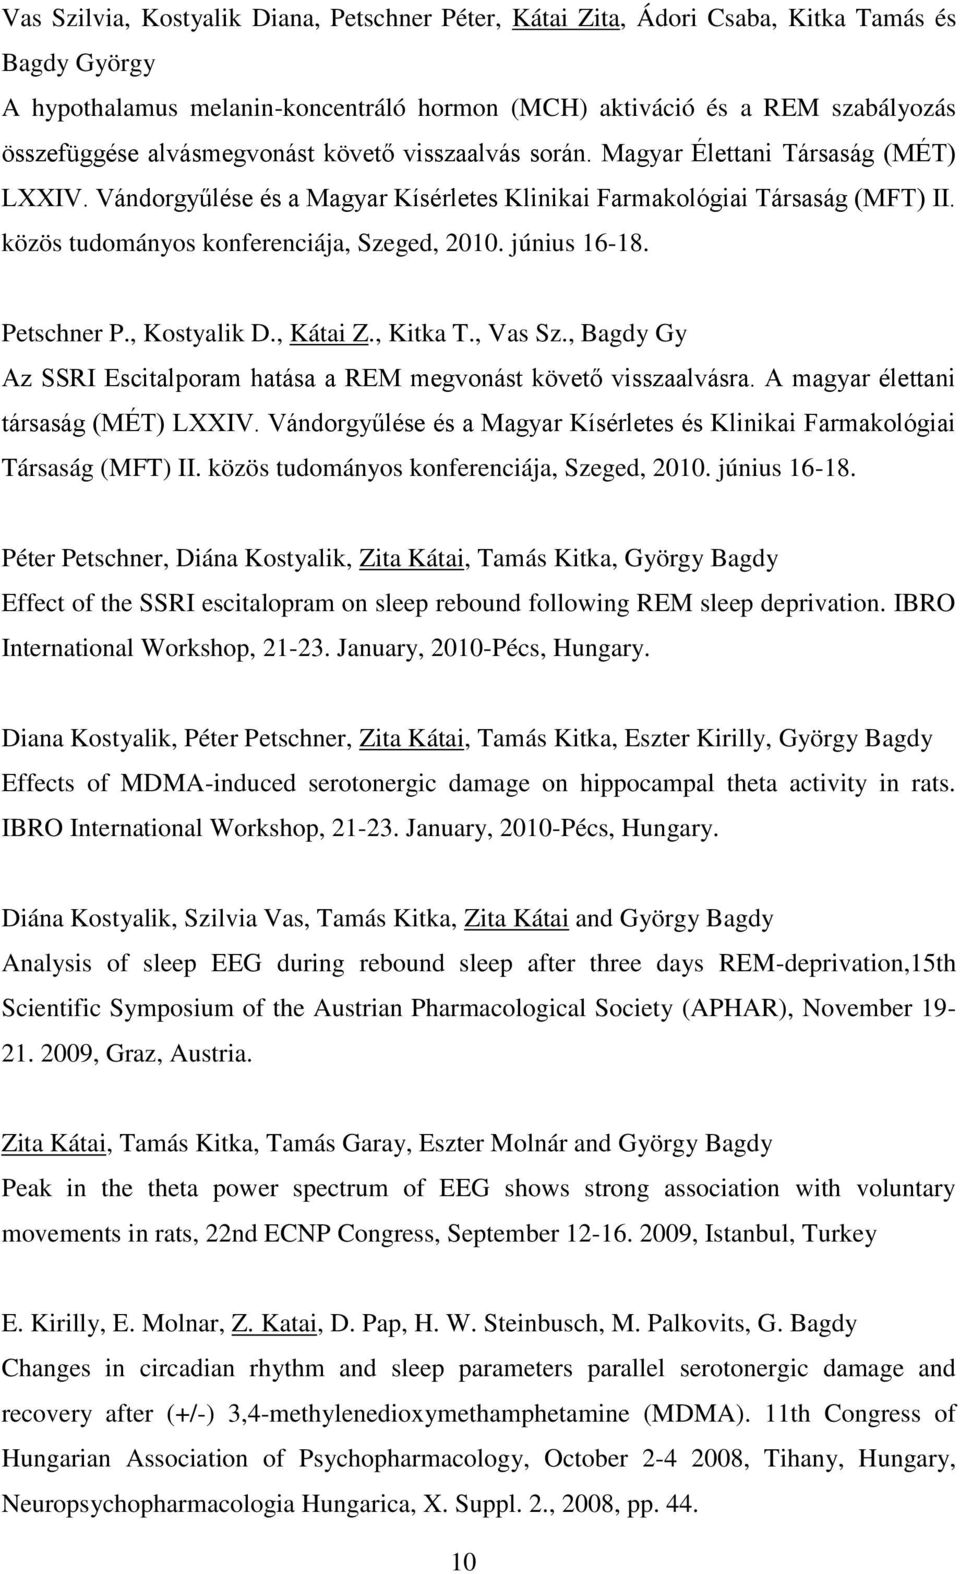 közös tudományos konferenciája, Szeged, 2010. június 16-18. Petschner P., Kostyalik D., Kátai Z., Kitka T., Vas Sz., Bagdy Gy Az SSRI Escitalporam hatása a REM megvonást követő visszaalvásra.